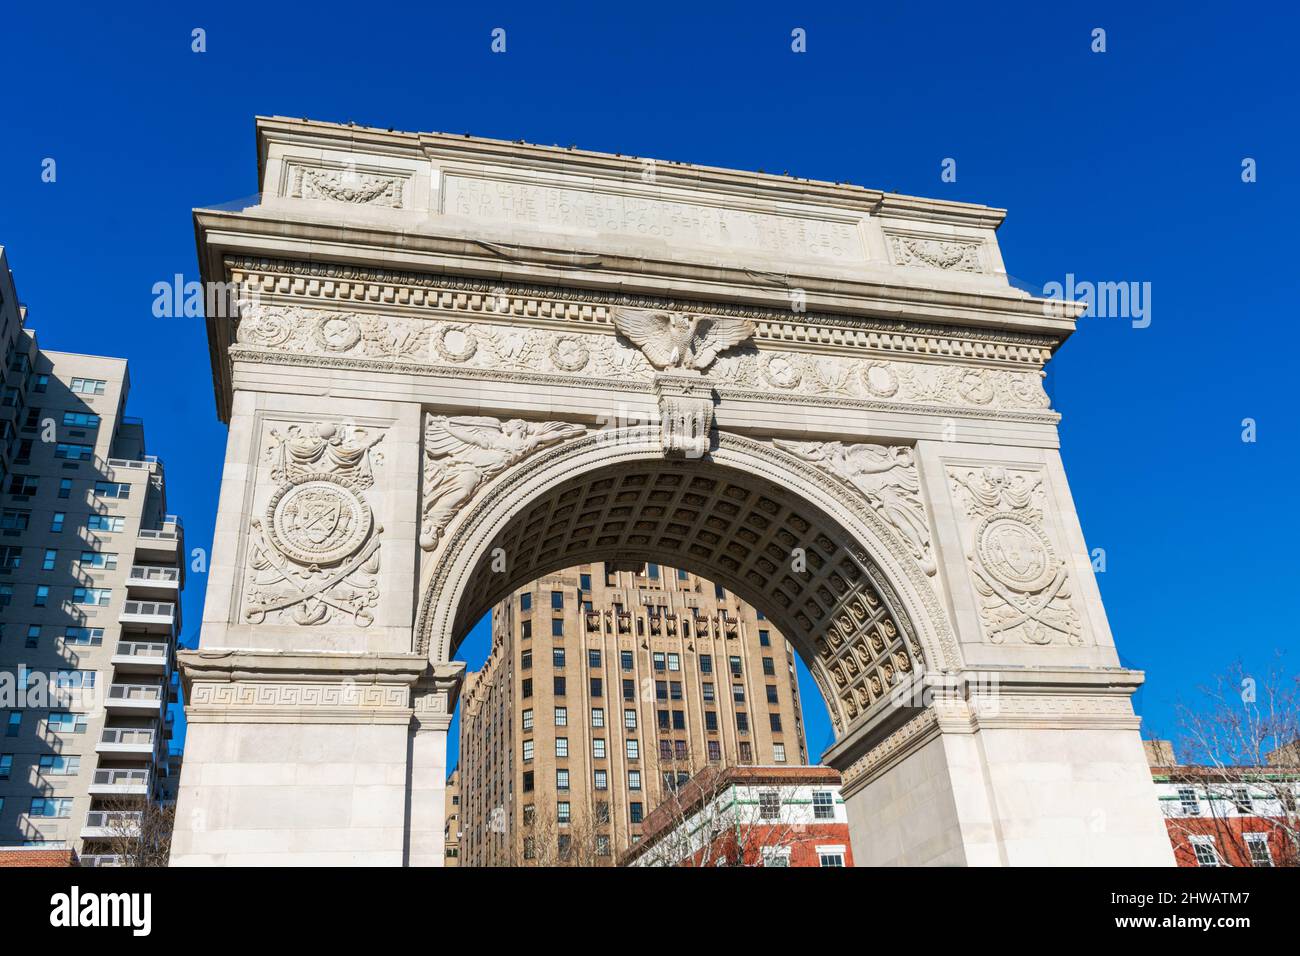 Washington Square Arch une arche historique en marbre du Washington Square Park, dans le quartier de Greenwich Village. - New York, États-Unis, février 202 Banque D'Images